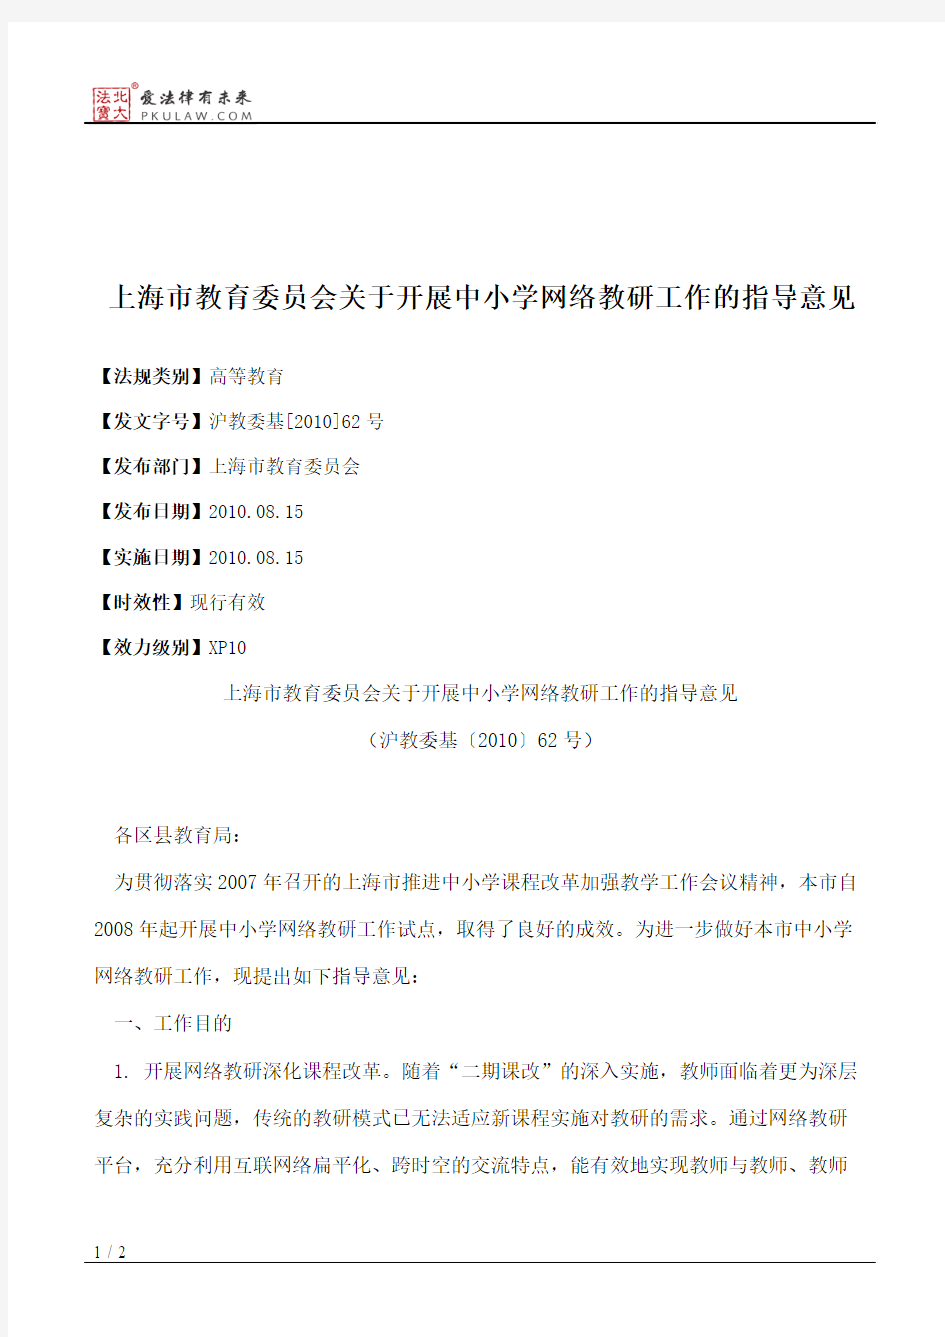 上海市教育委员会关于开展中小学网络教研工作的指导意见